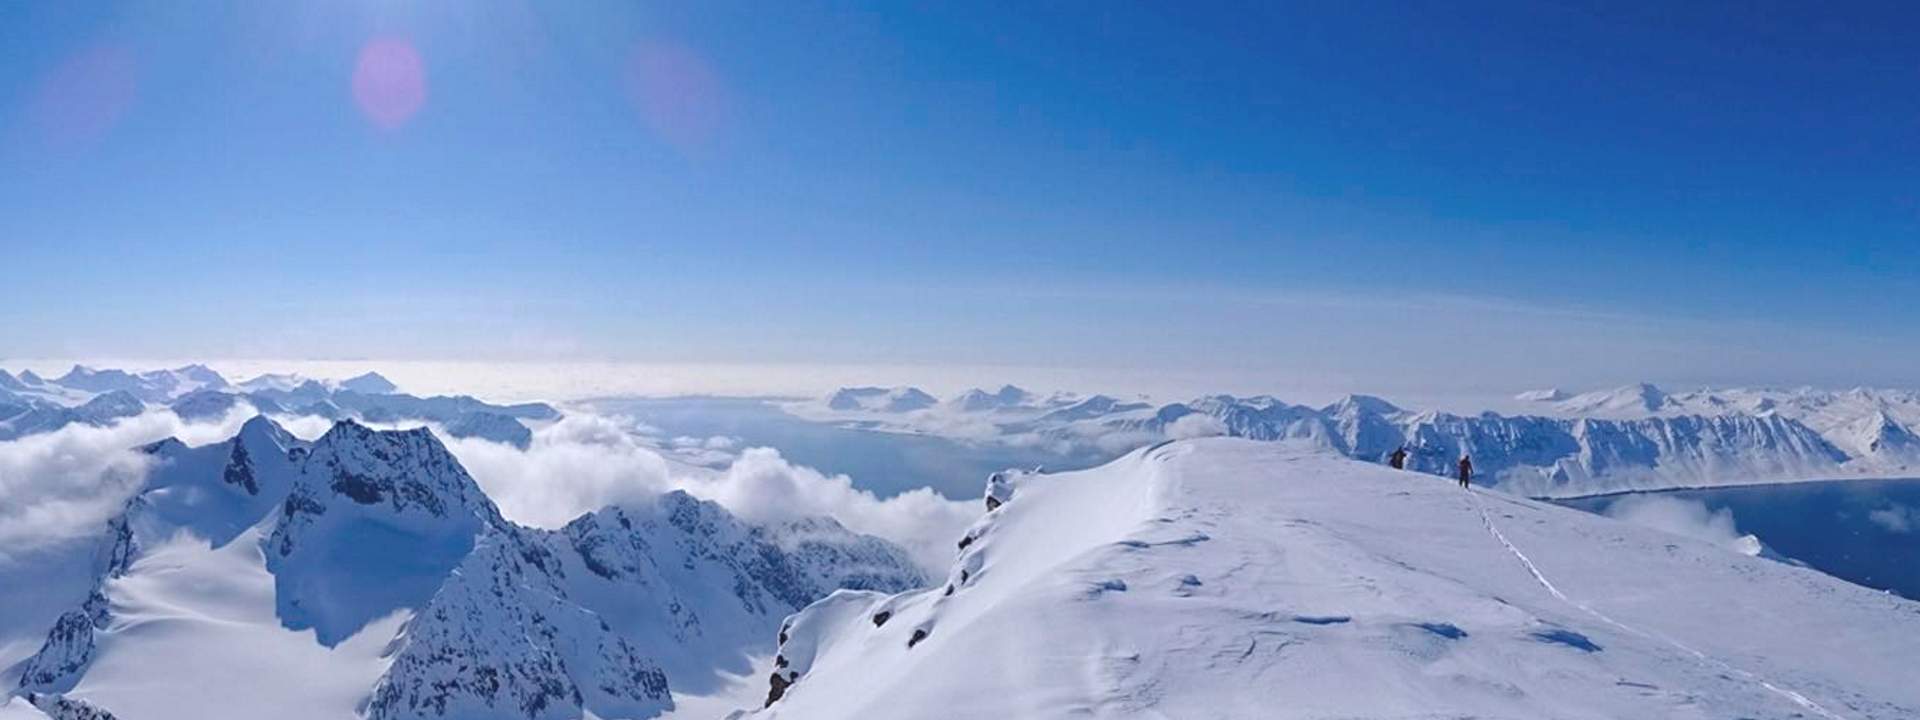 Navegad a Spitzberg para admirar las montañas nevadas del archipiélago